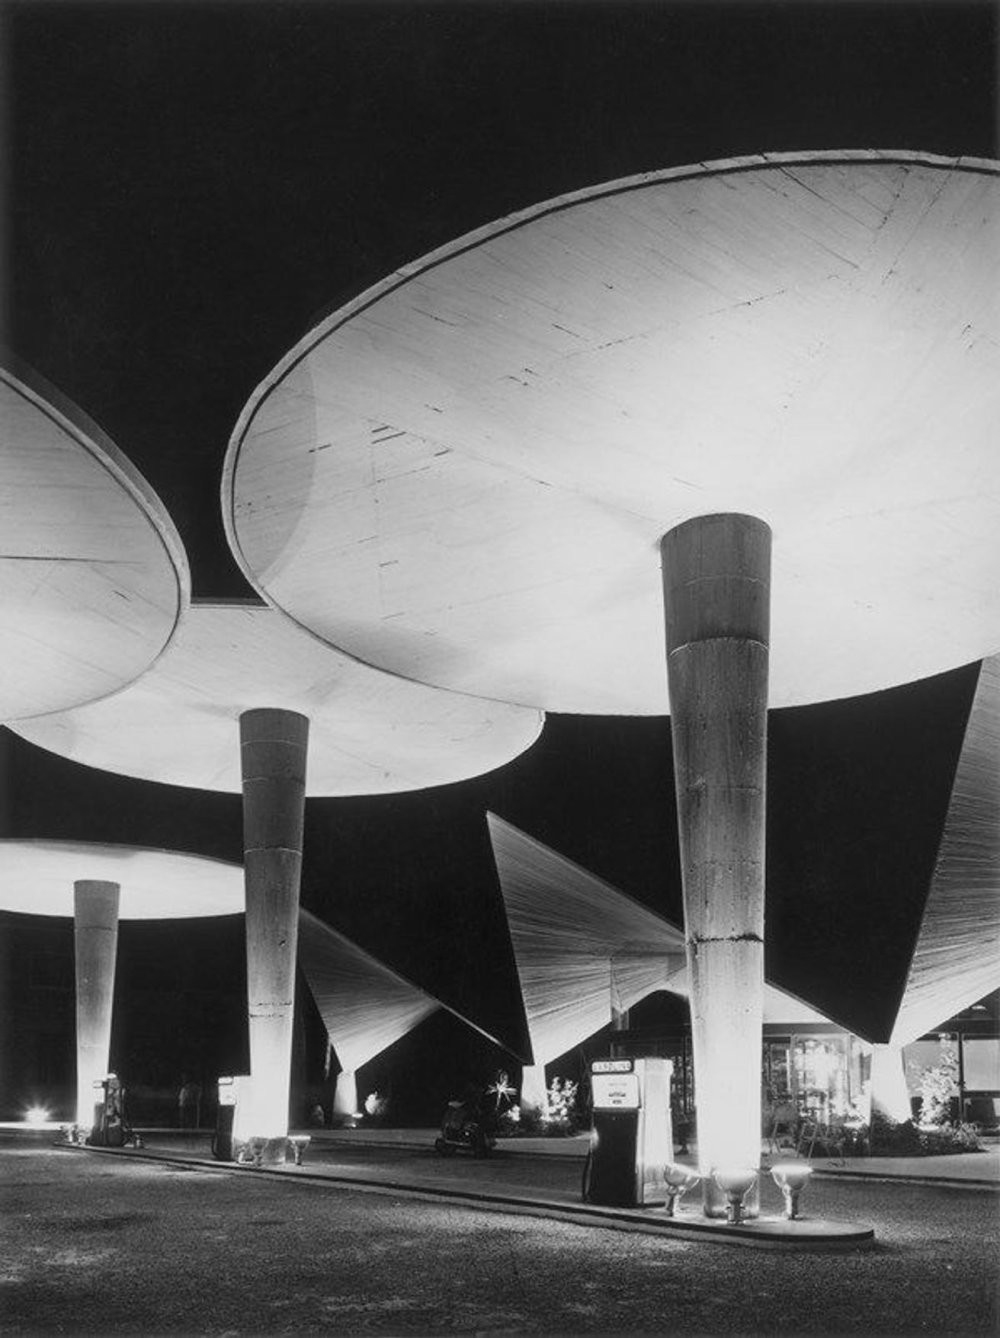 18. Заправка 1960 года в Валенсии, Испания. Архитектор - Хуан Аро Пиньяр